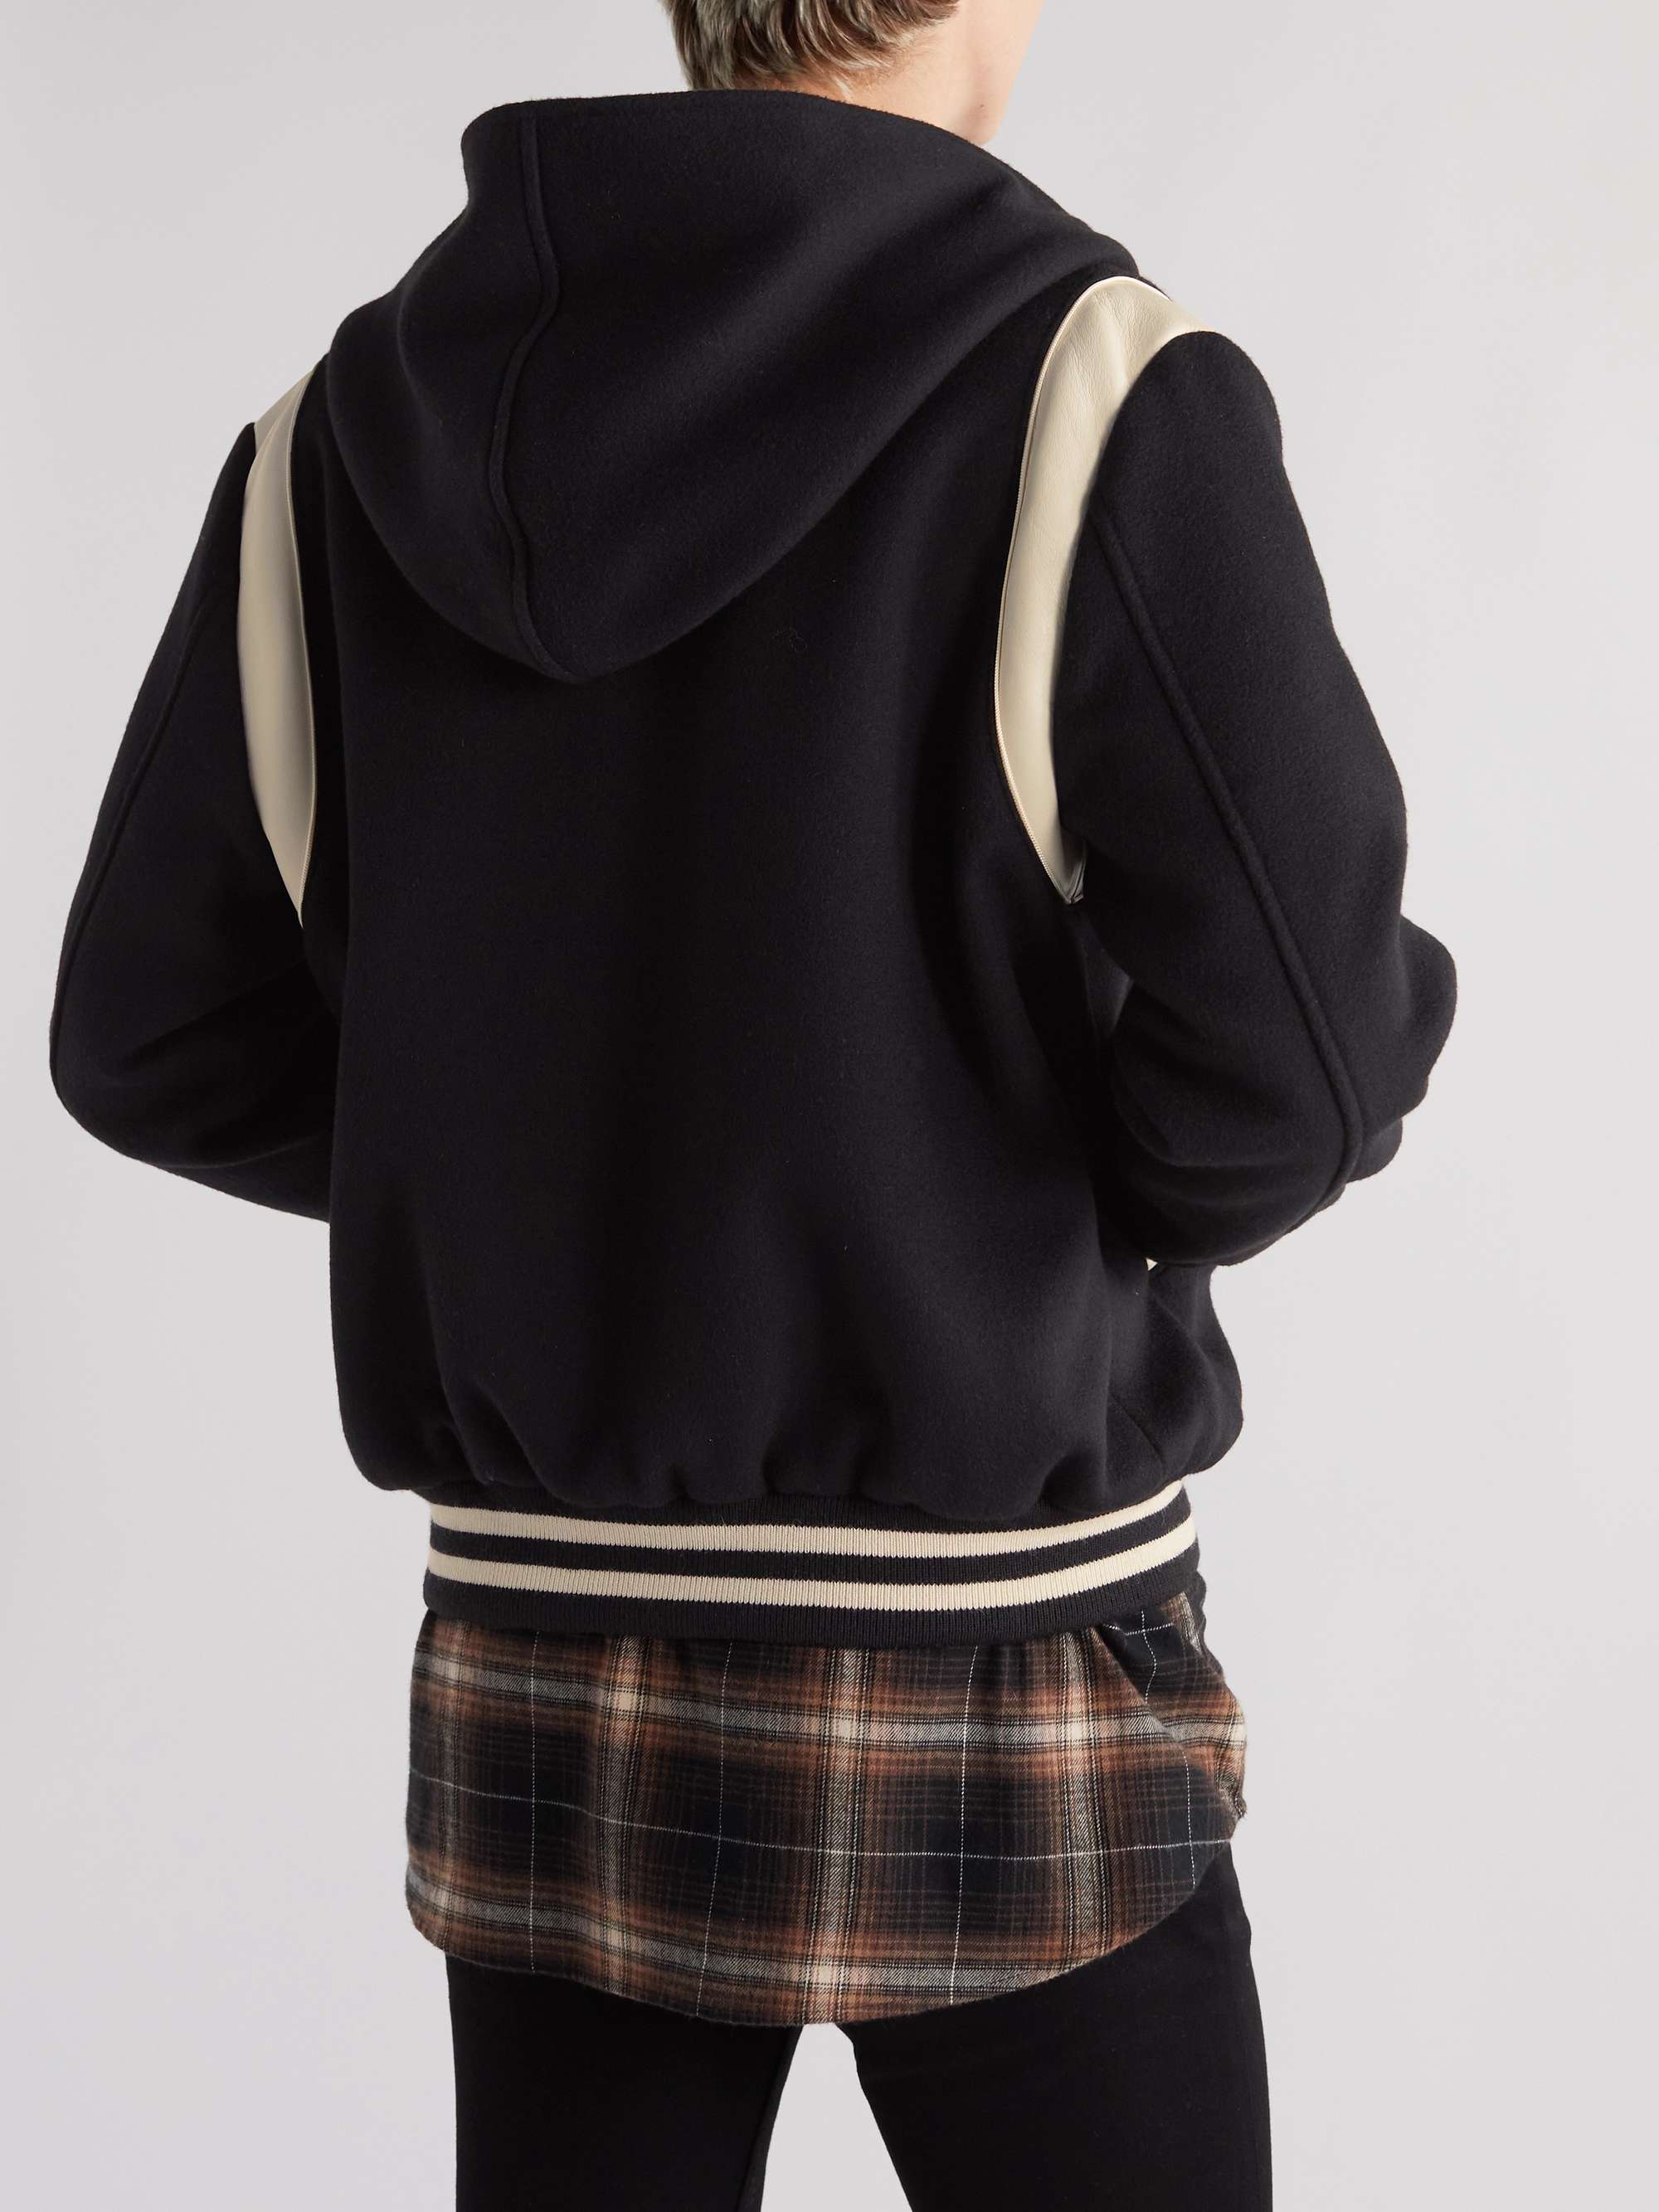 CELINE HOMME Appliquéd Wool and Cashmere-Blend Hooded Varsity Jacket